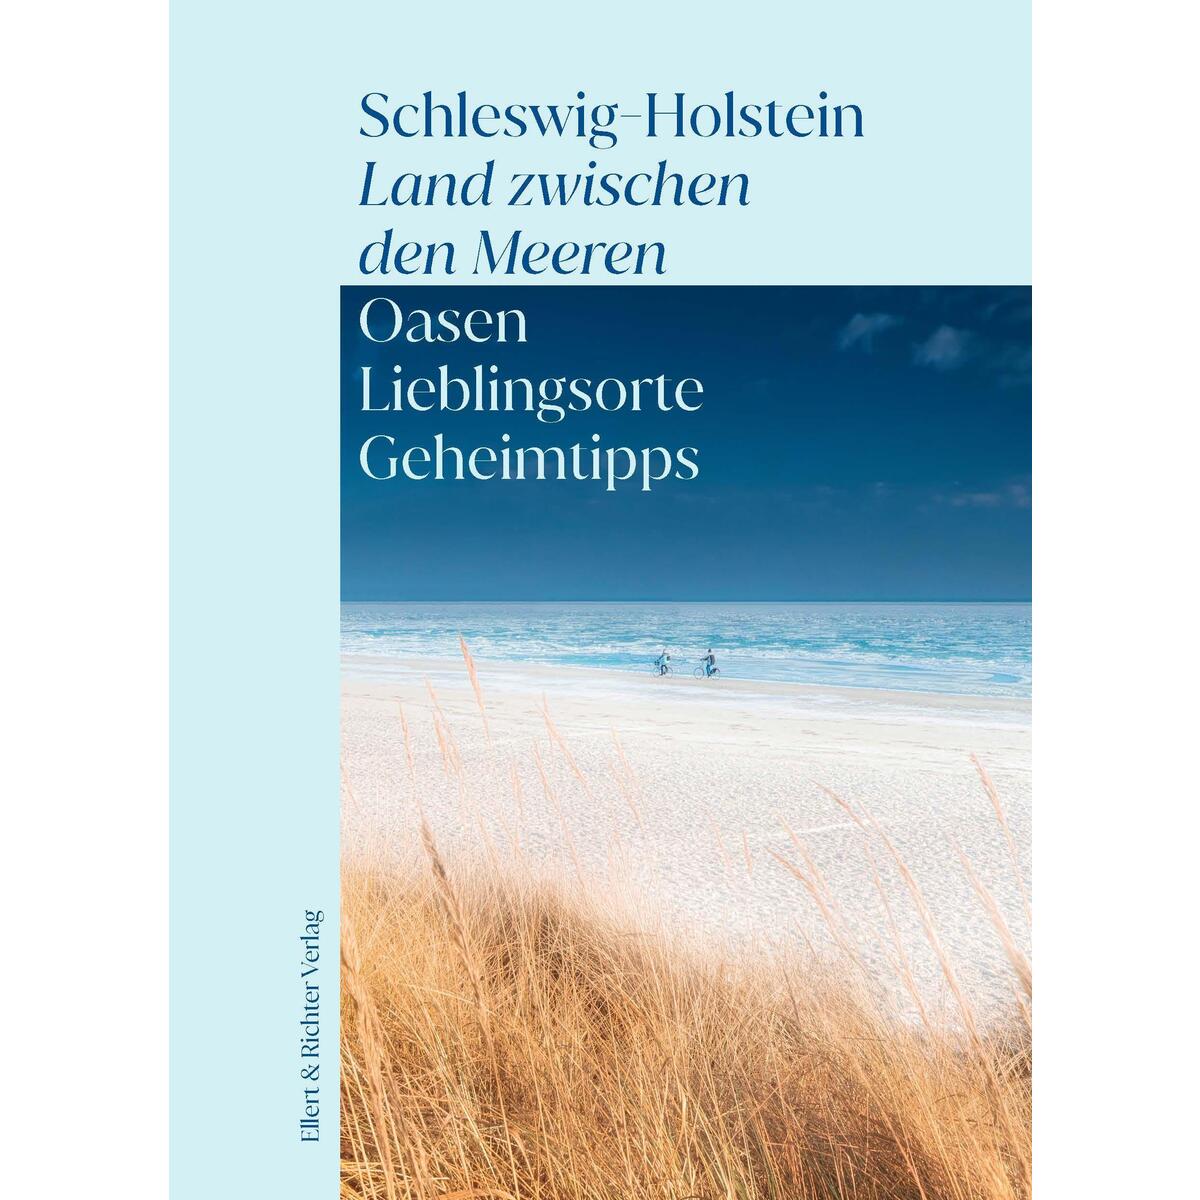 Schleswig-Holstein - Land zwischen den Meeren von Ellert & Richter Verlag G